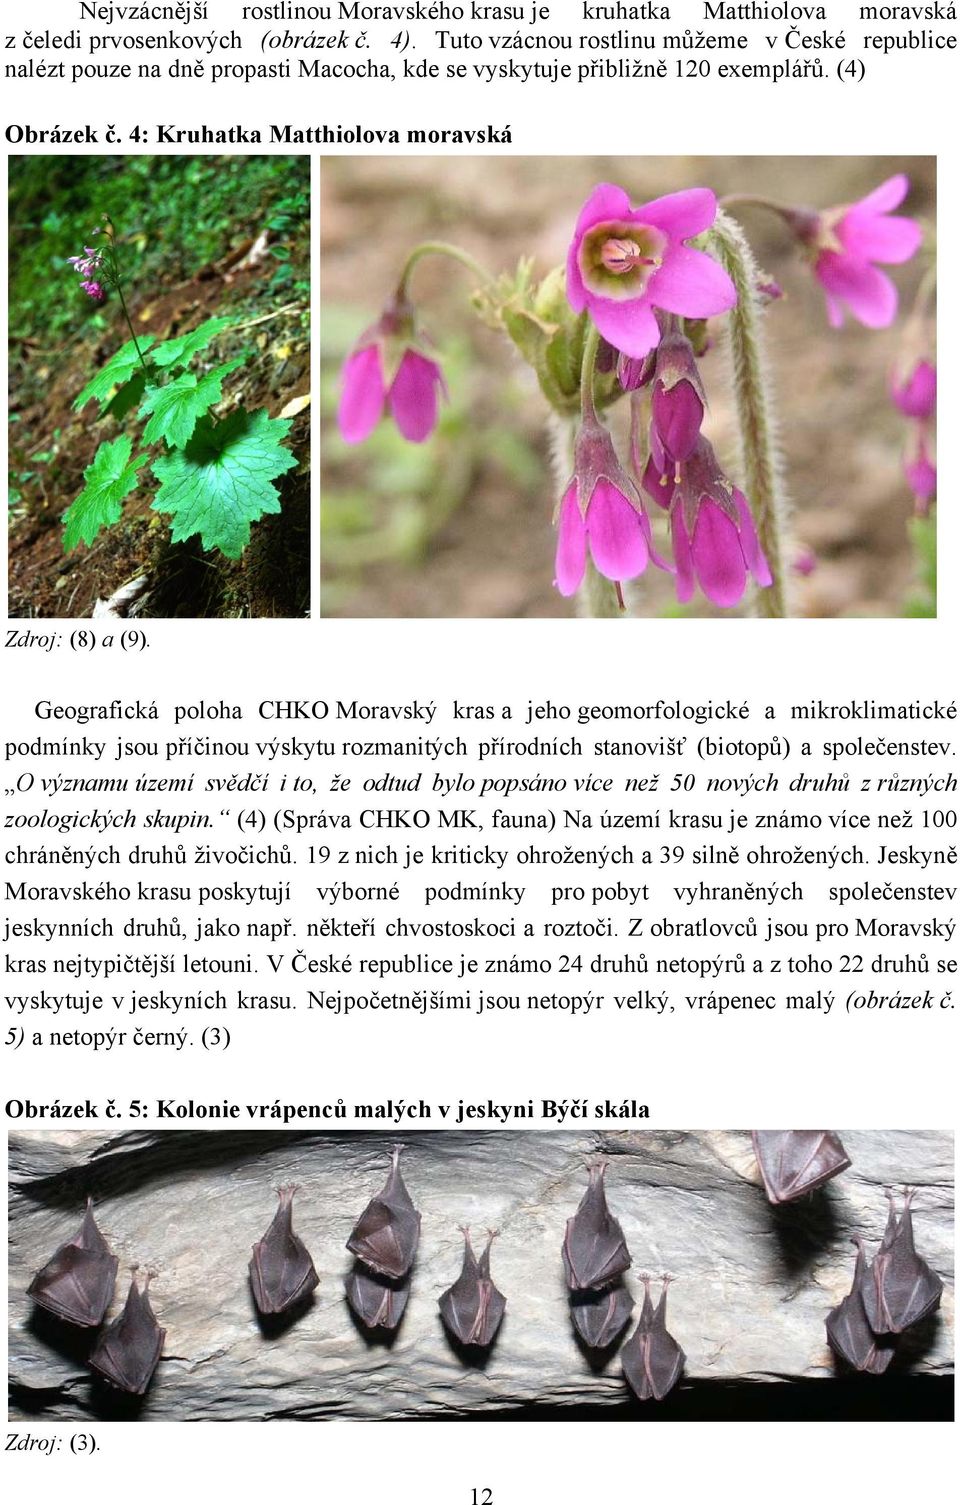 Geografická poloha CHKO Moravský kras a jeho geomorfologické a mikroklimatické podmínky jsou příčinou výskytu rozmanitých přírodních stanovišť (biotopů) a společenstev.